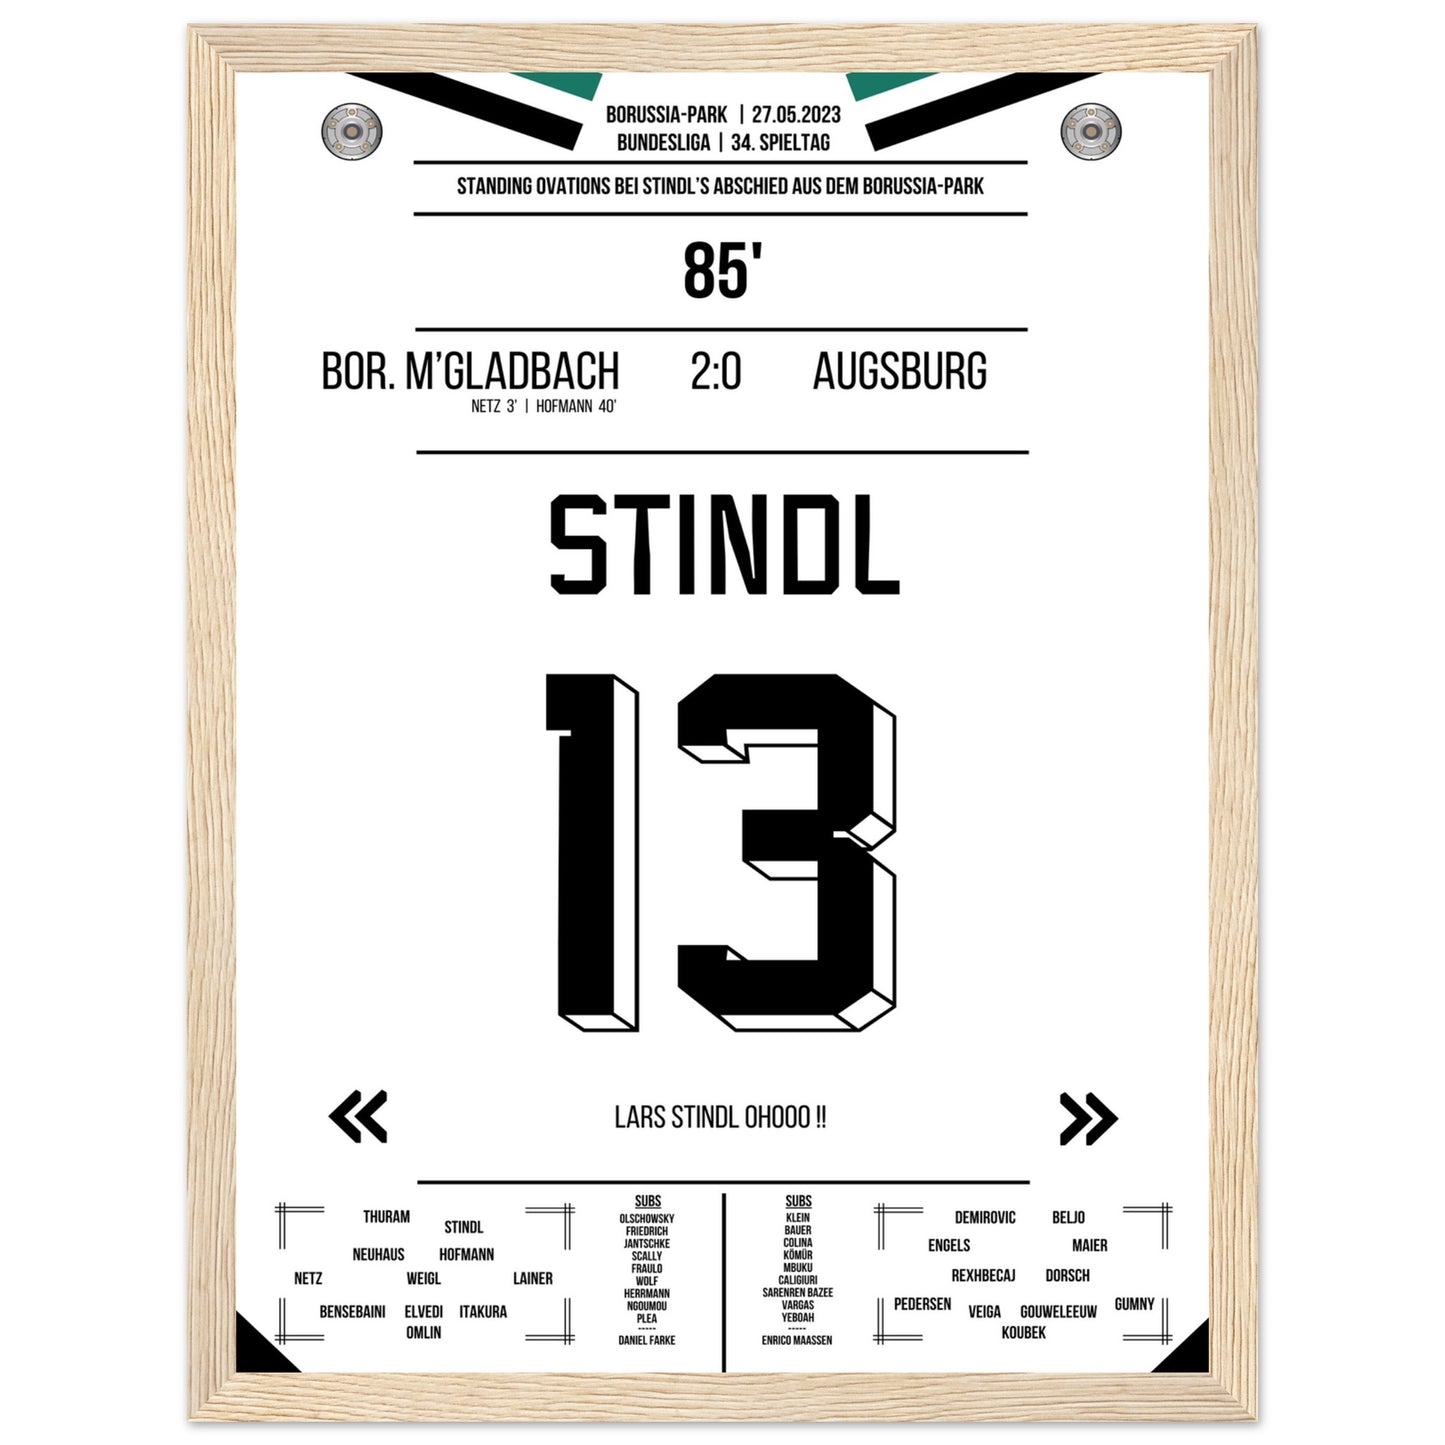 Stindl's Verabschiedung im Borussia-Park 2023